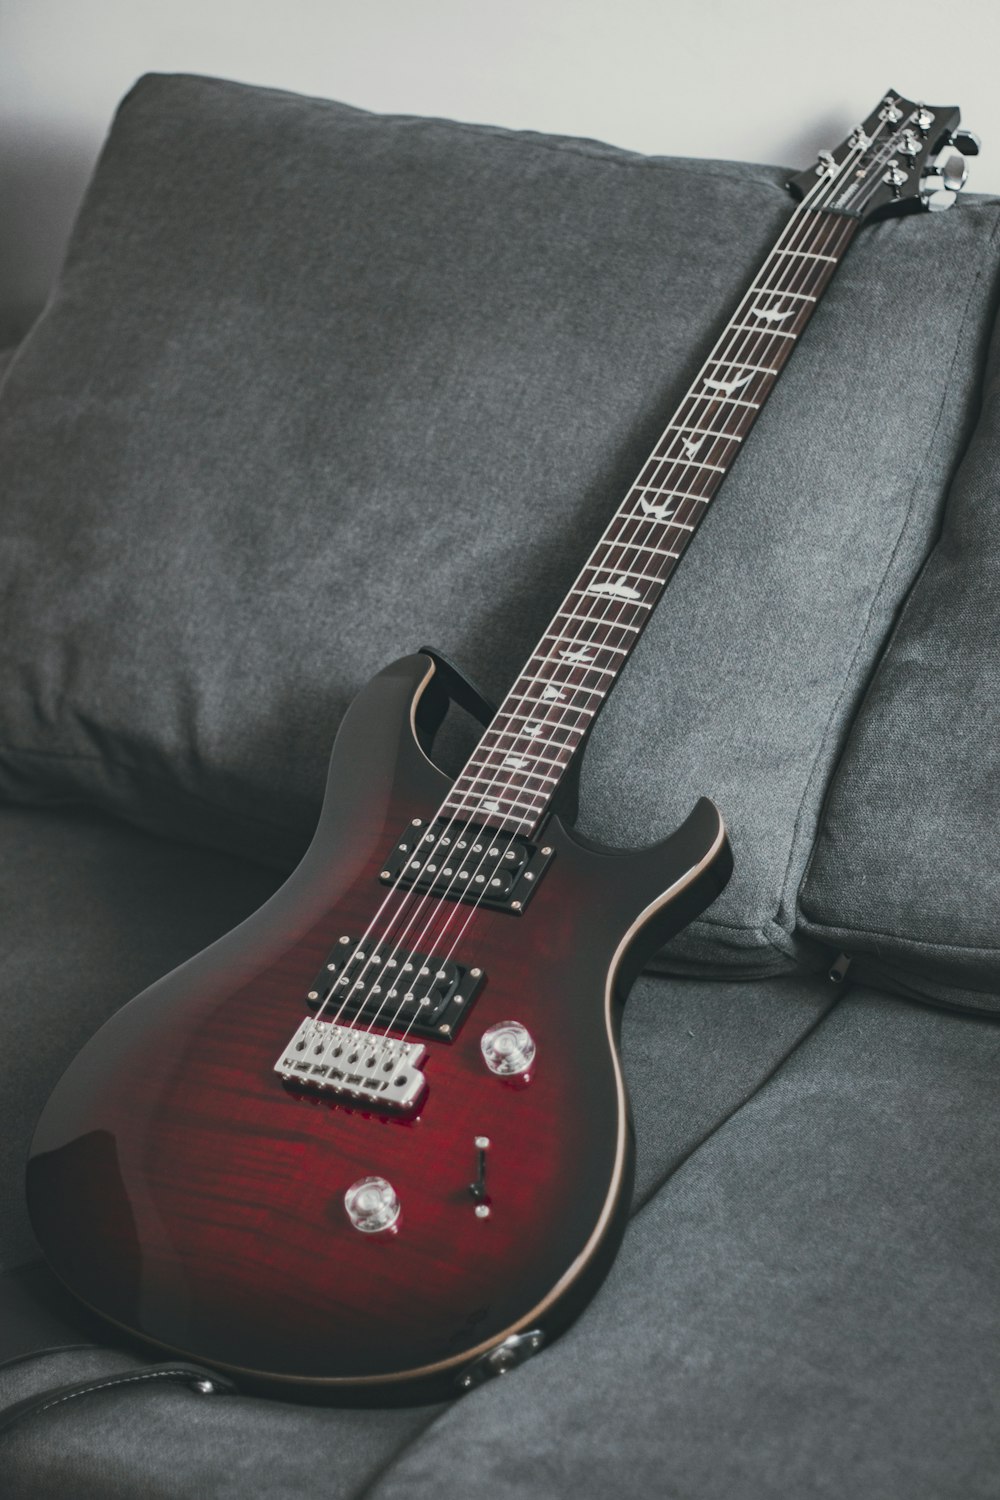 검은색 섬유에 빨간색과 흰색 일렉트릭 기타